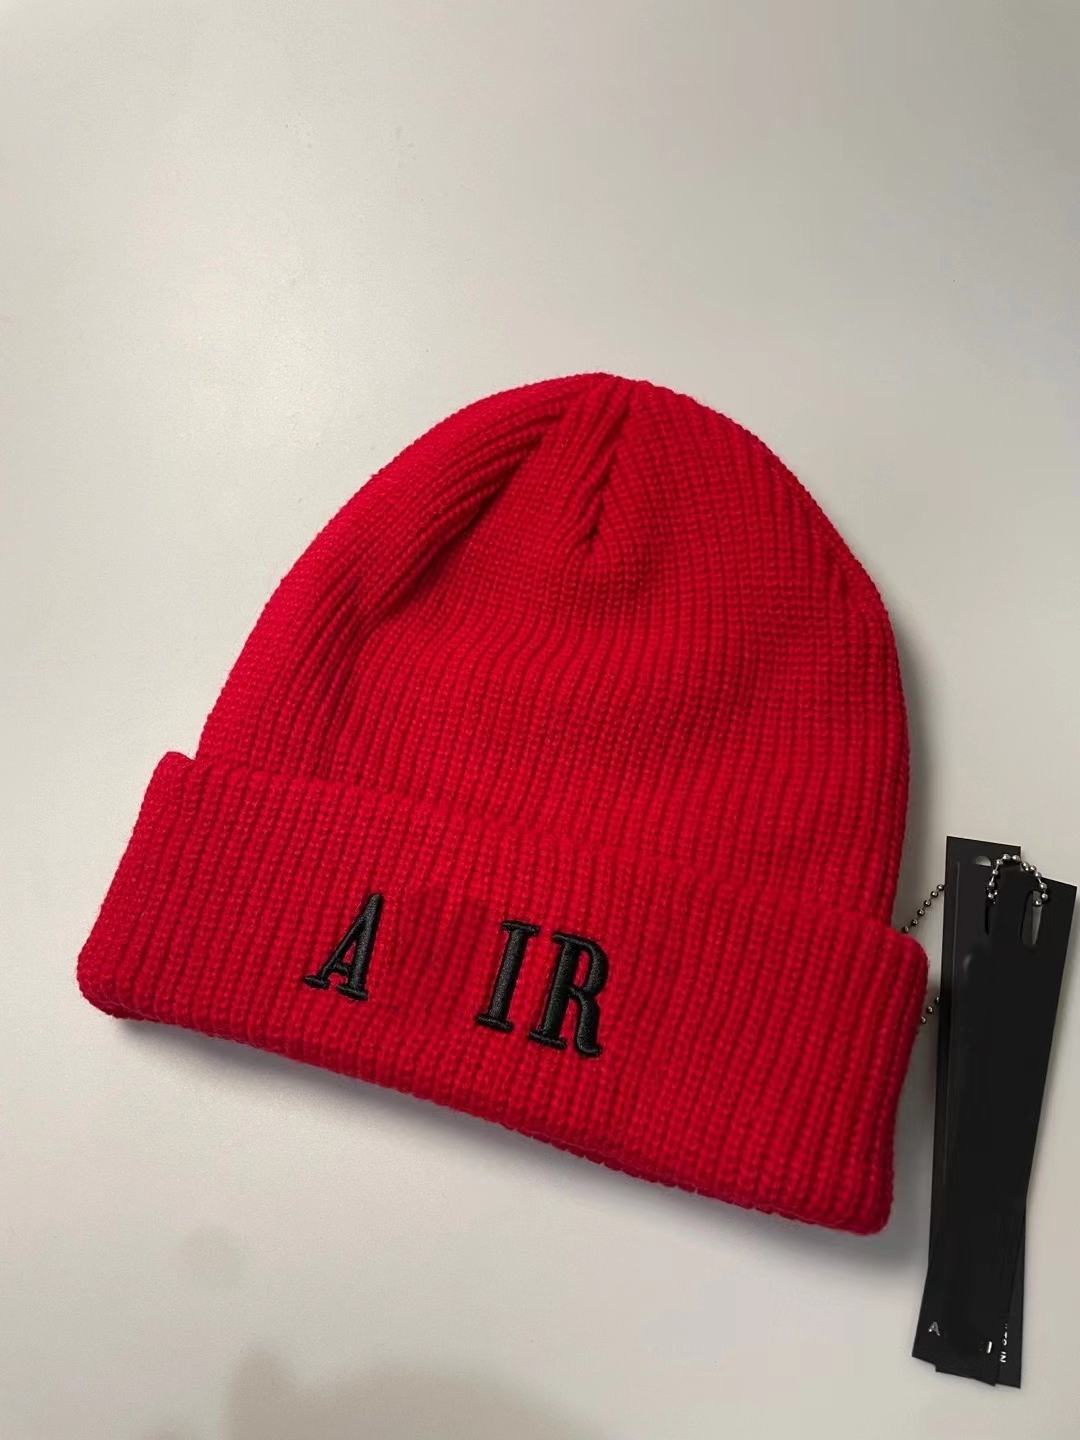 Chapeau de bonnet de créateur d'hiver de haute qualité AM tricoté chapeau brodé sports de plein air tendance coupe-vent chapeau chaud